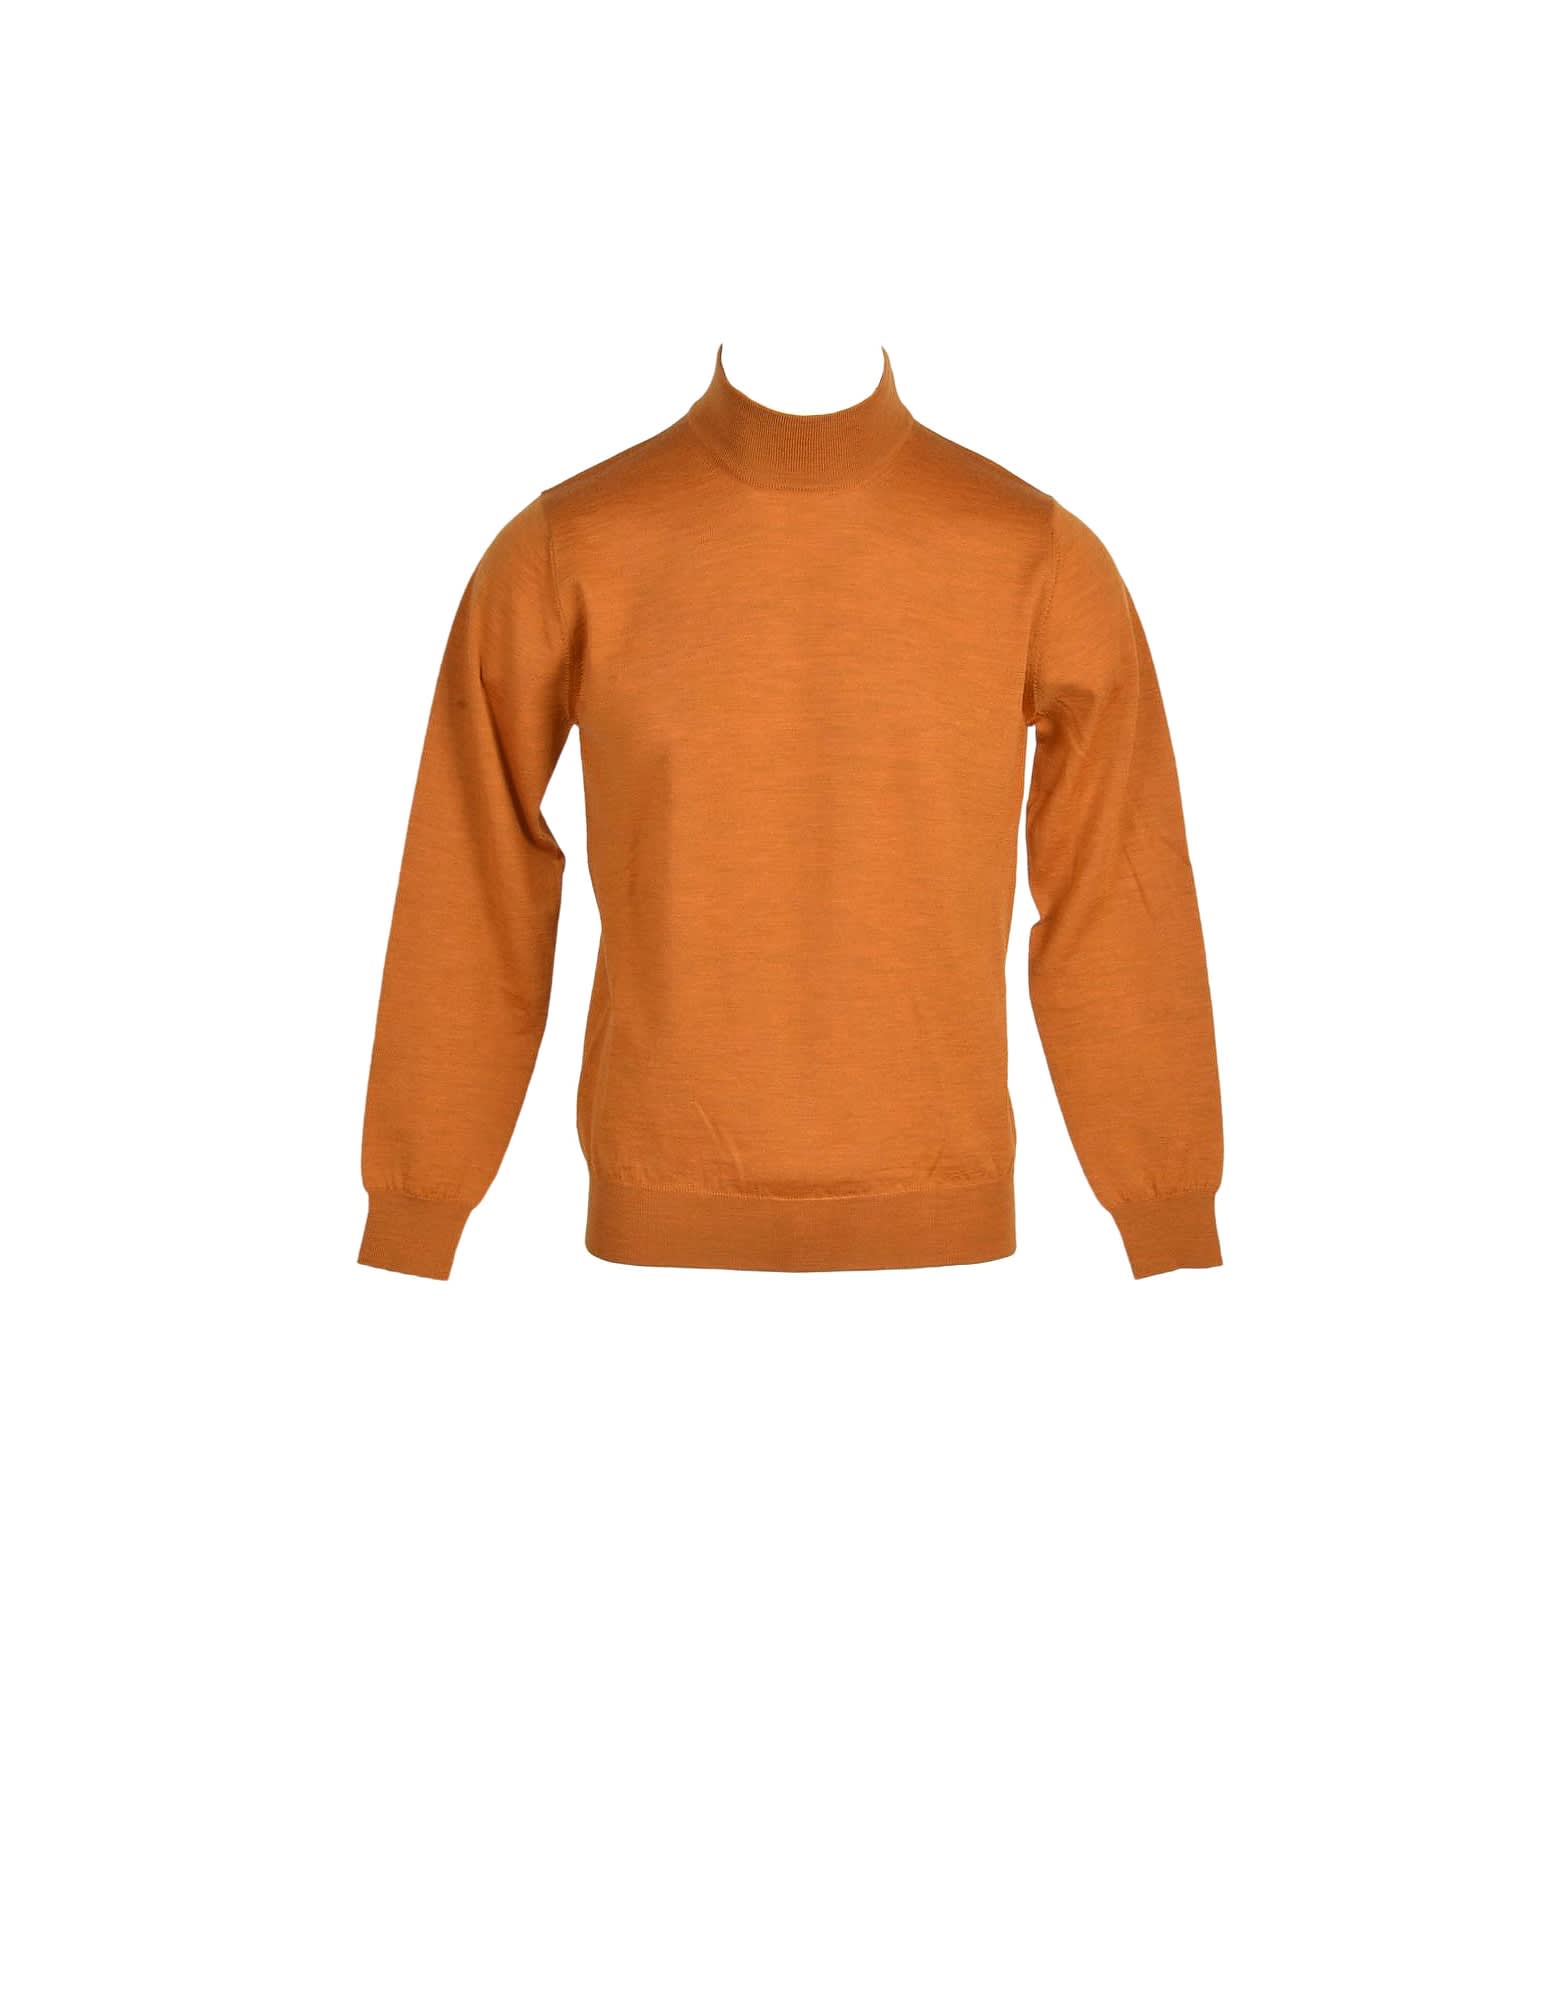 Altea Mens Orange Sweater